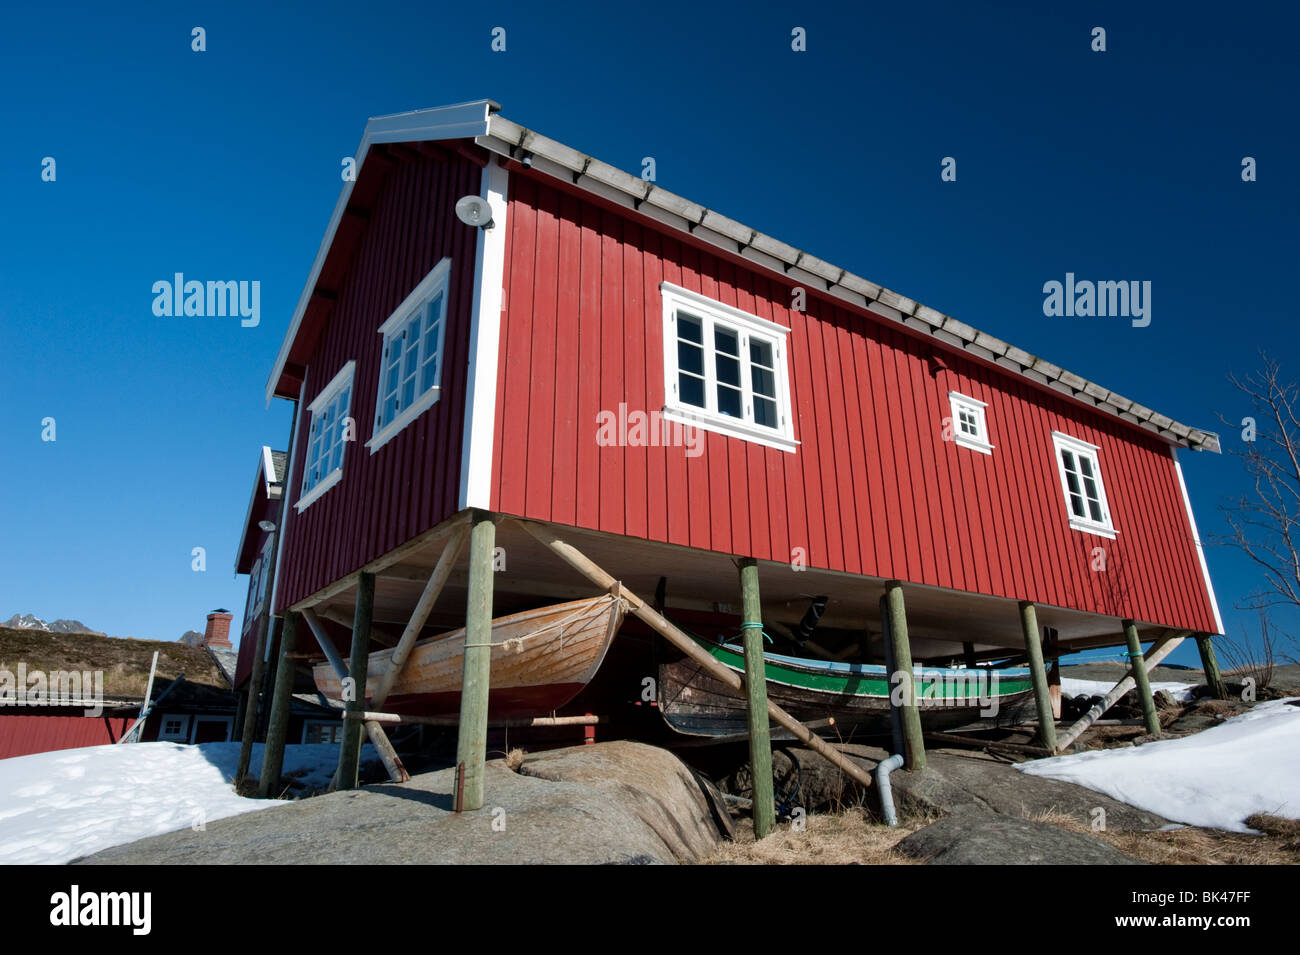 En bois rouge traditionnelle Rorbu cabane de pêcheur avec les bateaux de pêche enregistrés ci-dessous dans le village de Reine dans les îles Lofoten en Norvège Banque D'Images